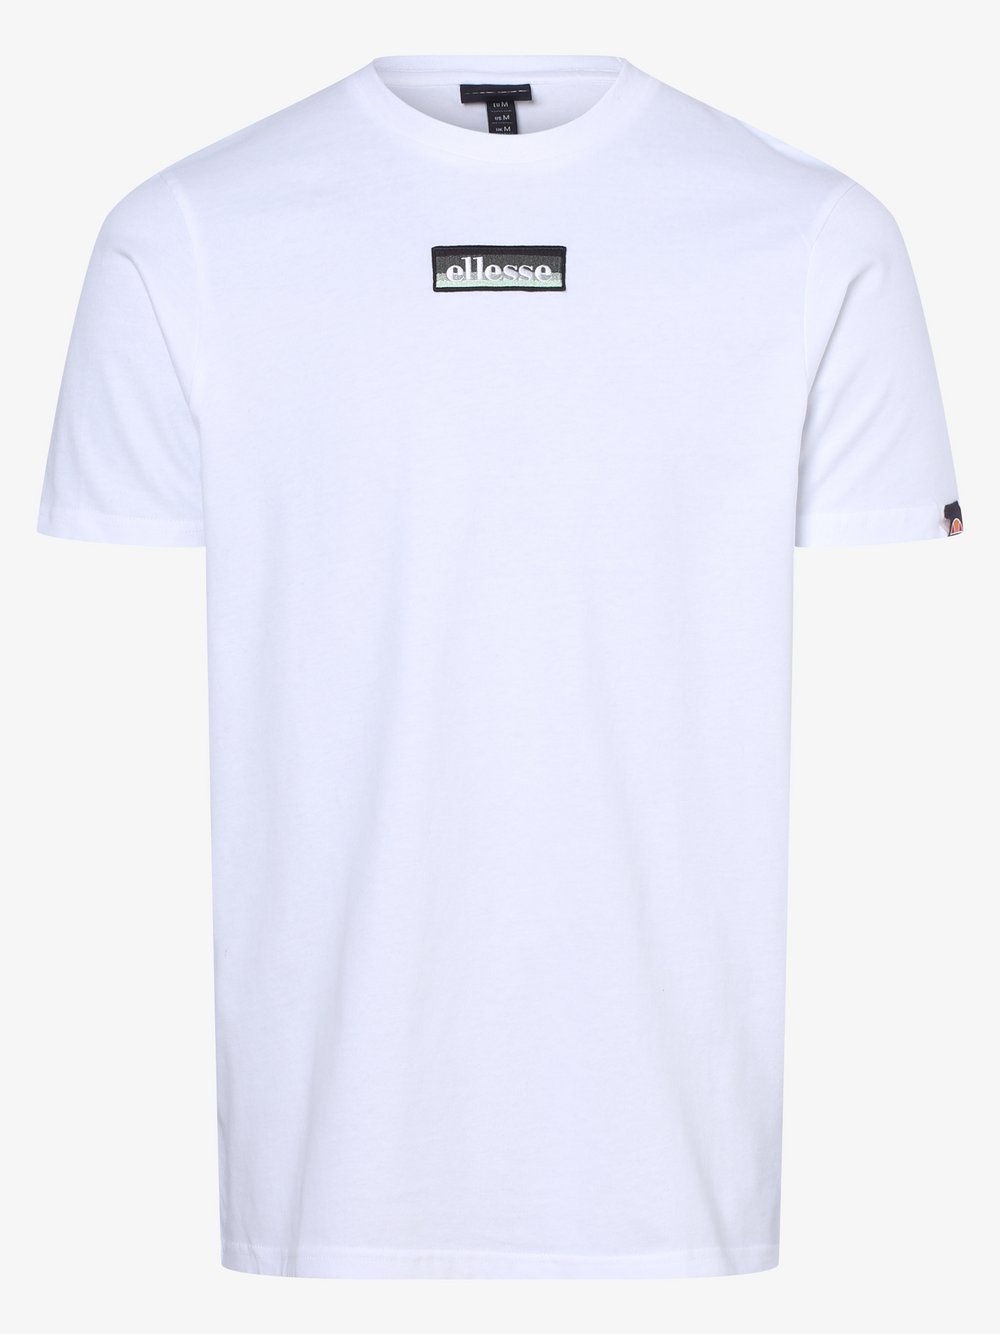 ellesse - T-shirt męski – Valliteri, biały